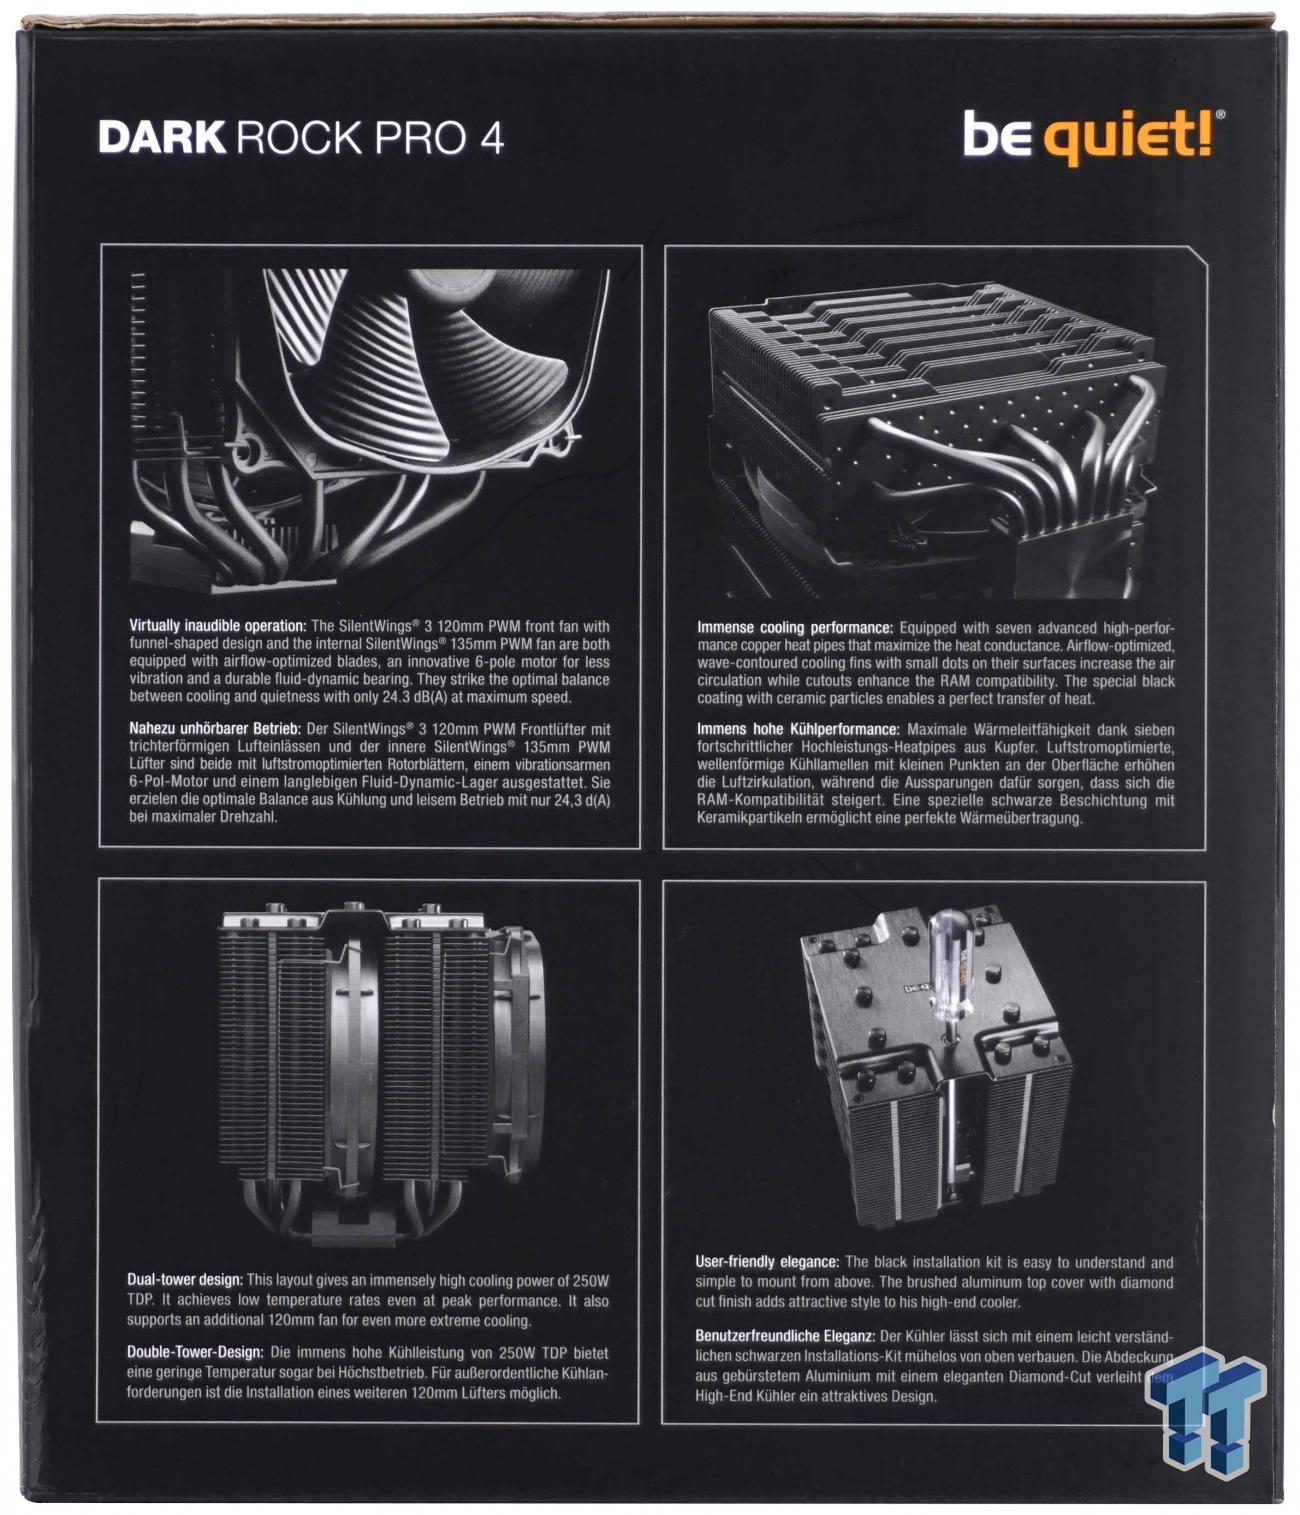 Be Quiet Dark Rock Pro 4 Cpu Cooler Review Tweaktown